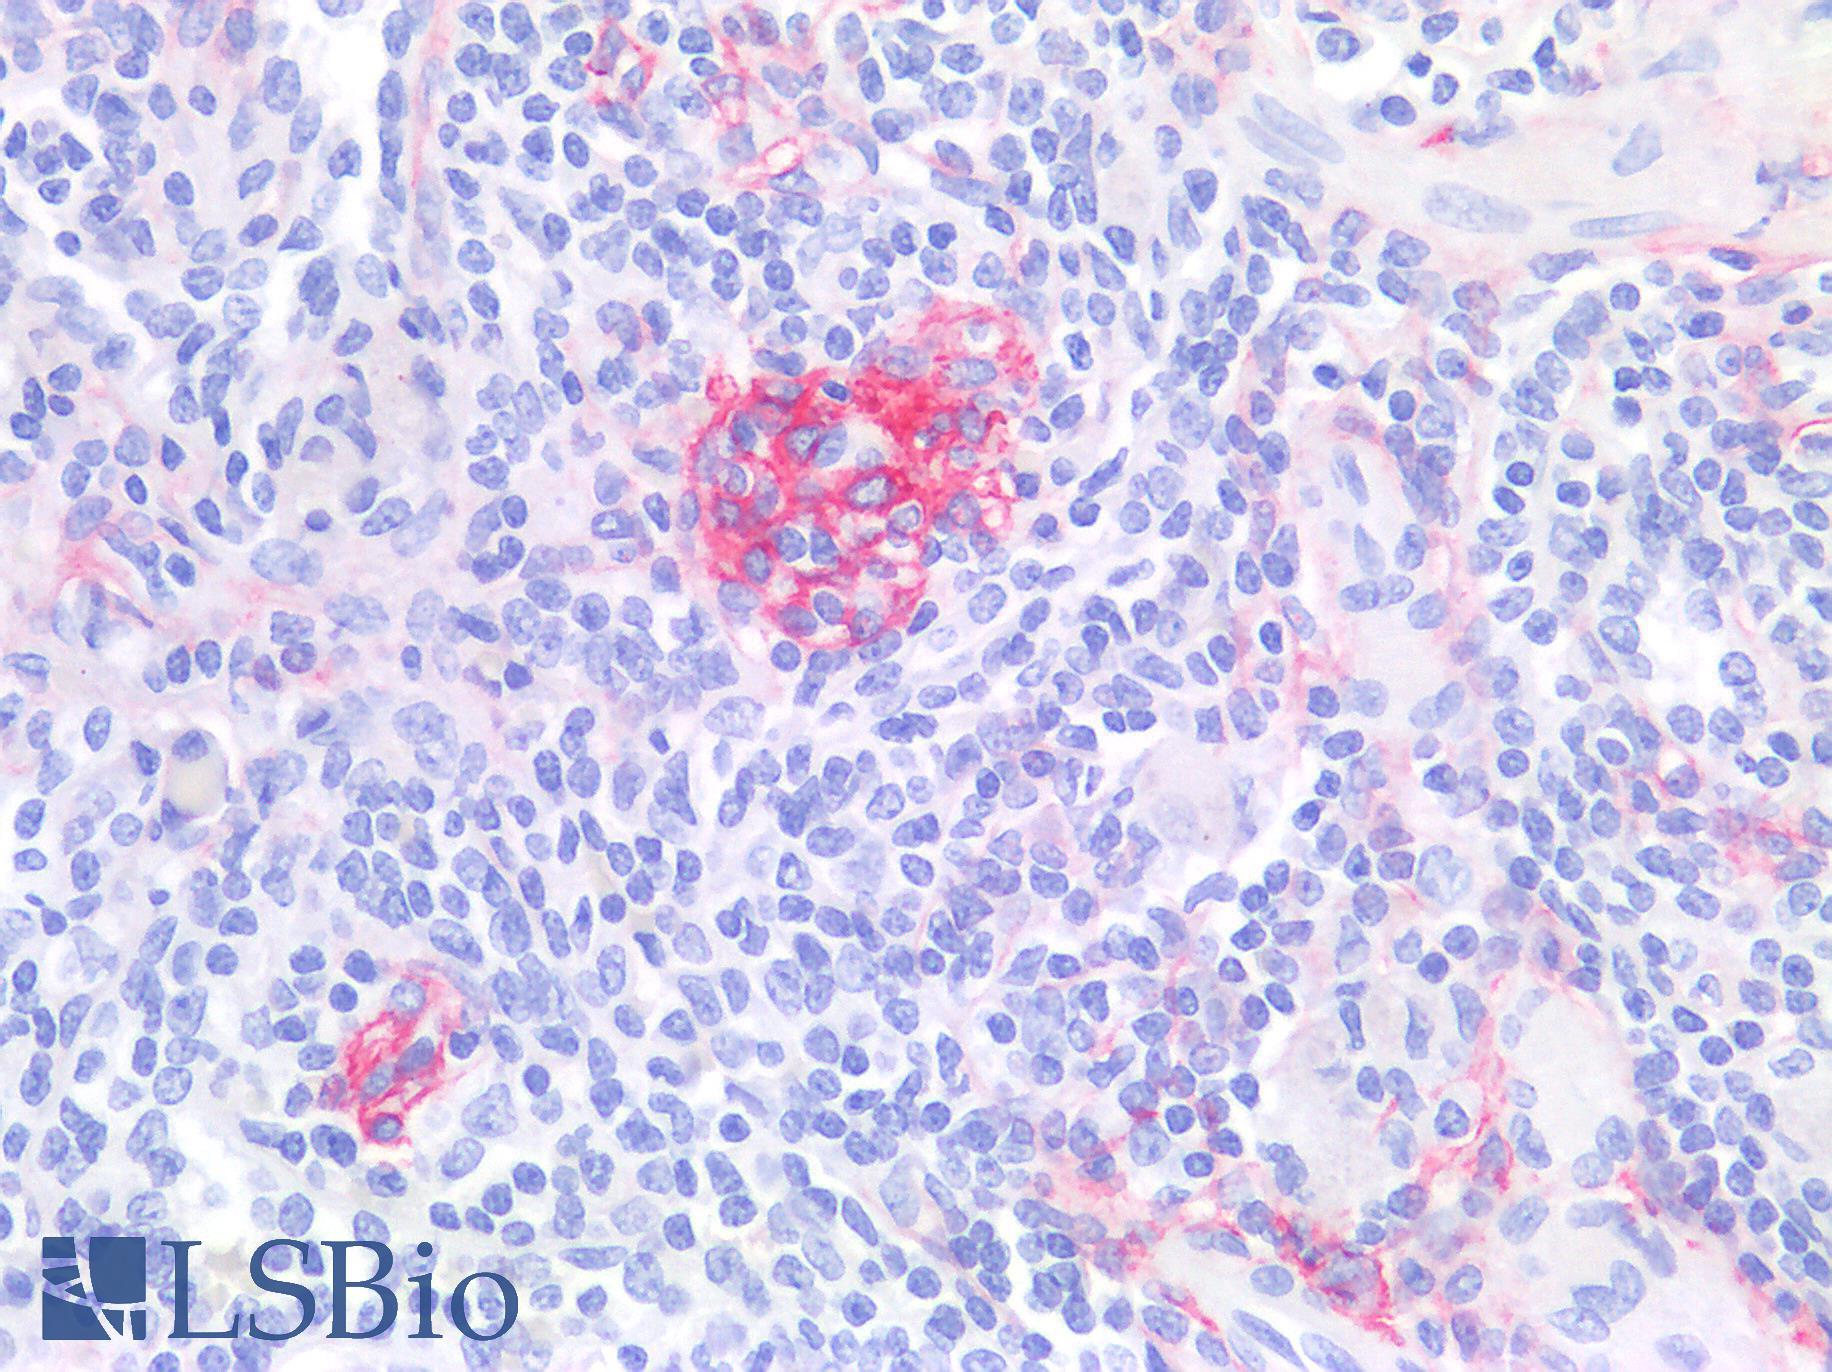 NGFR / CD271 / TNR16 Antibody - Human Spleen: Formalin-Fixed, Paraffin-Embedded (FFPE)